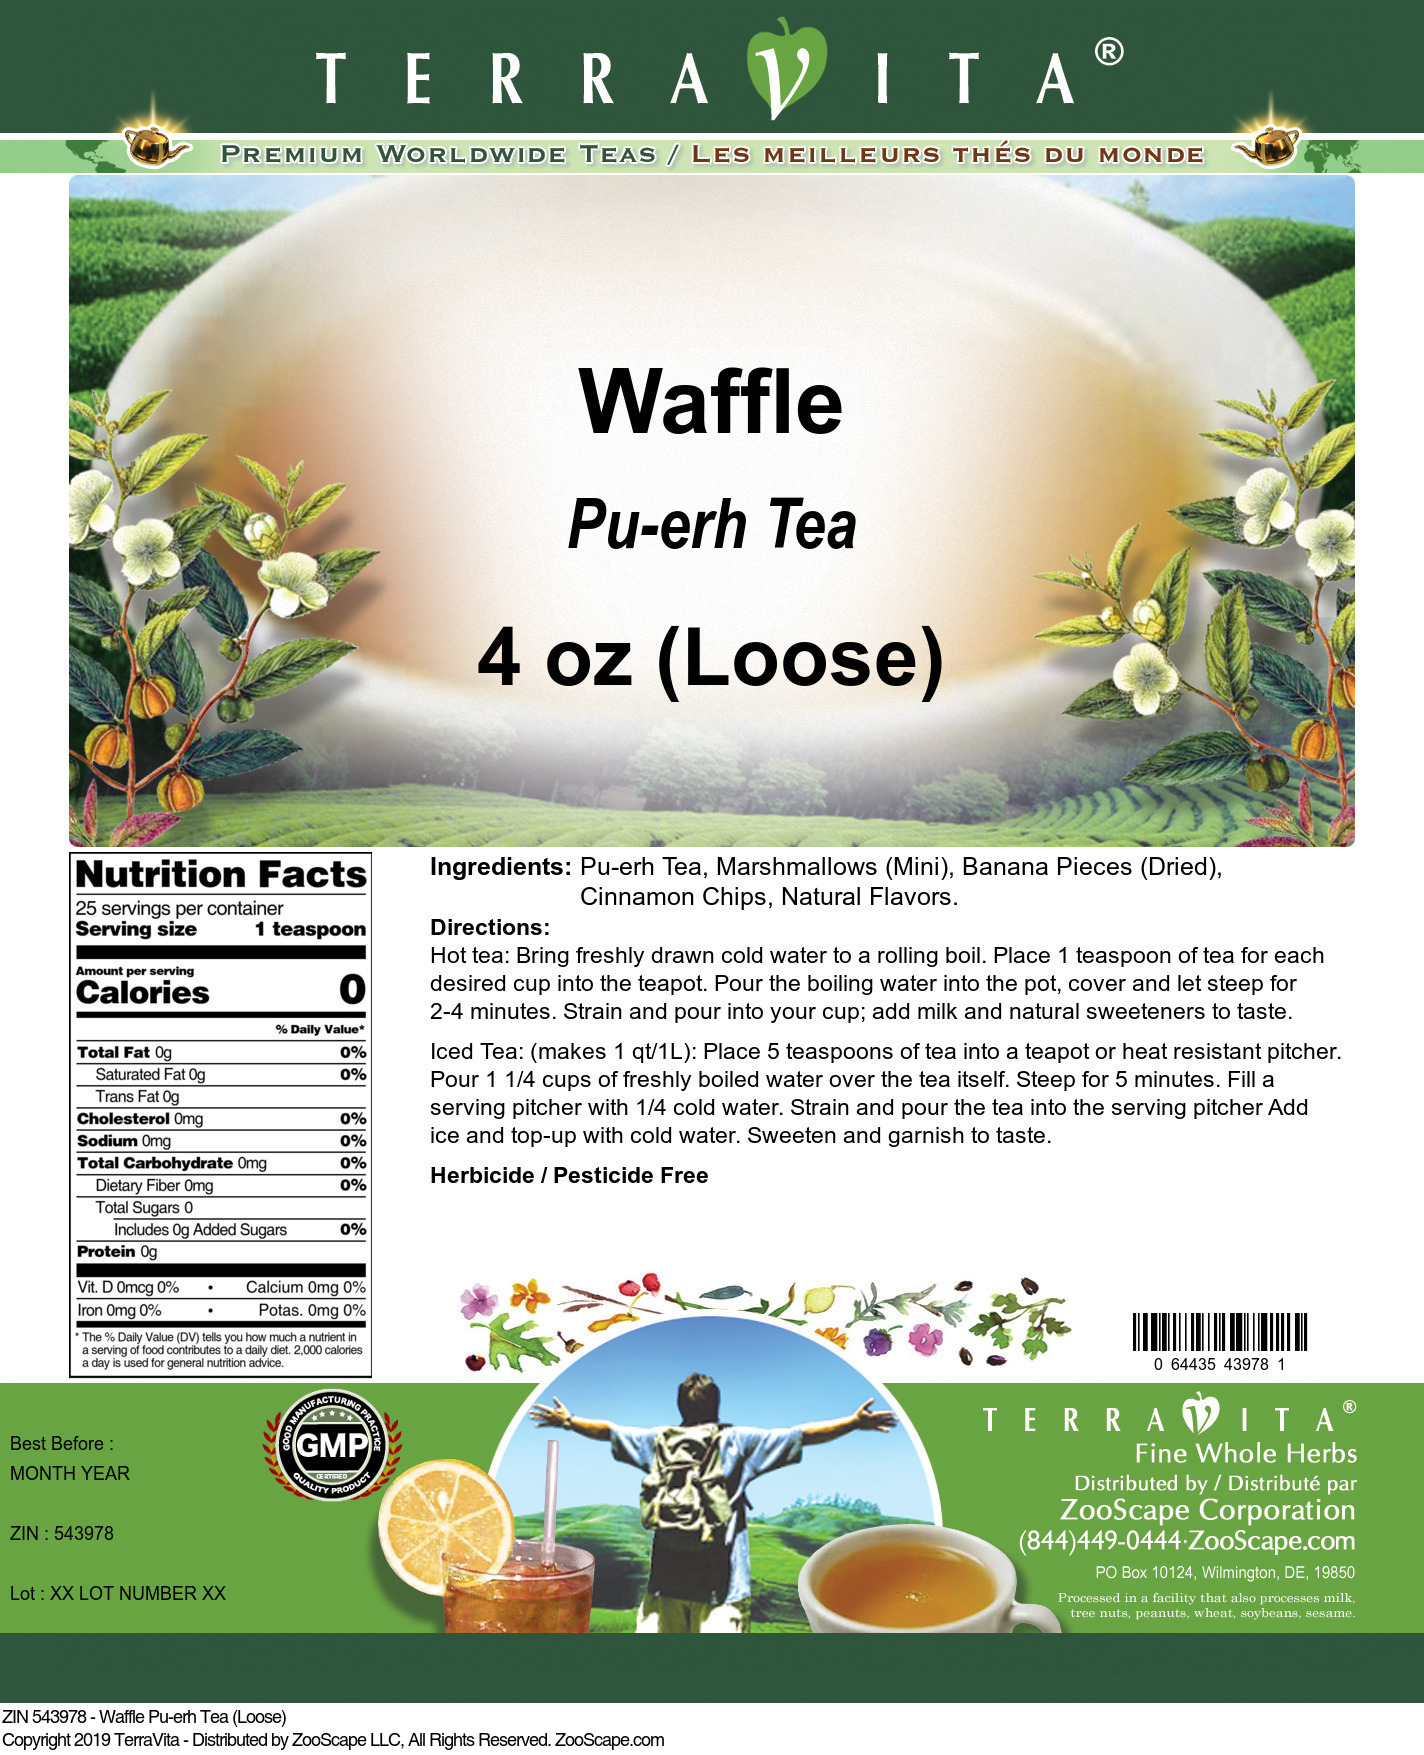 Waffle Pu-erh Tea (Loose) - Label